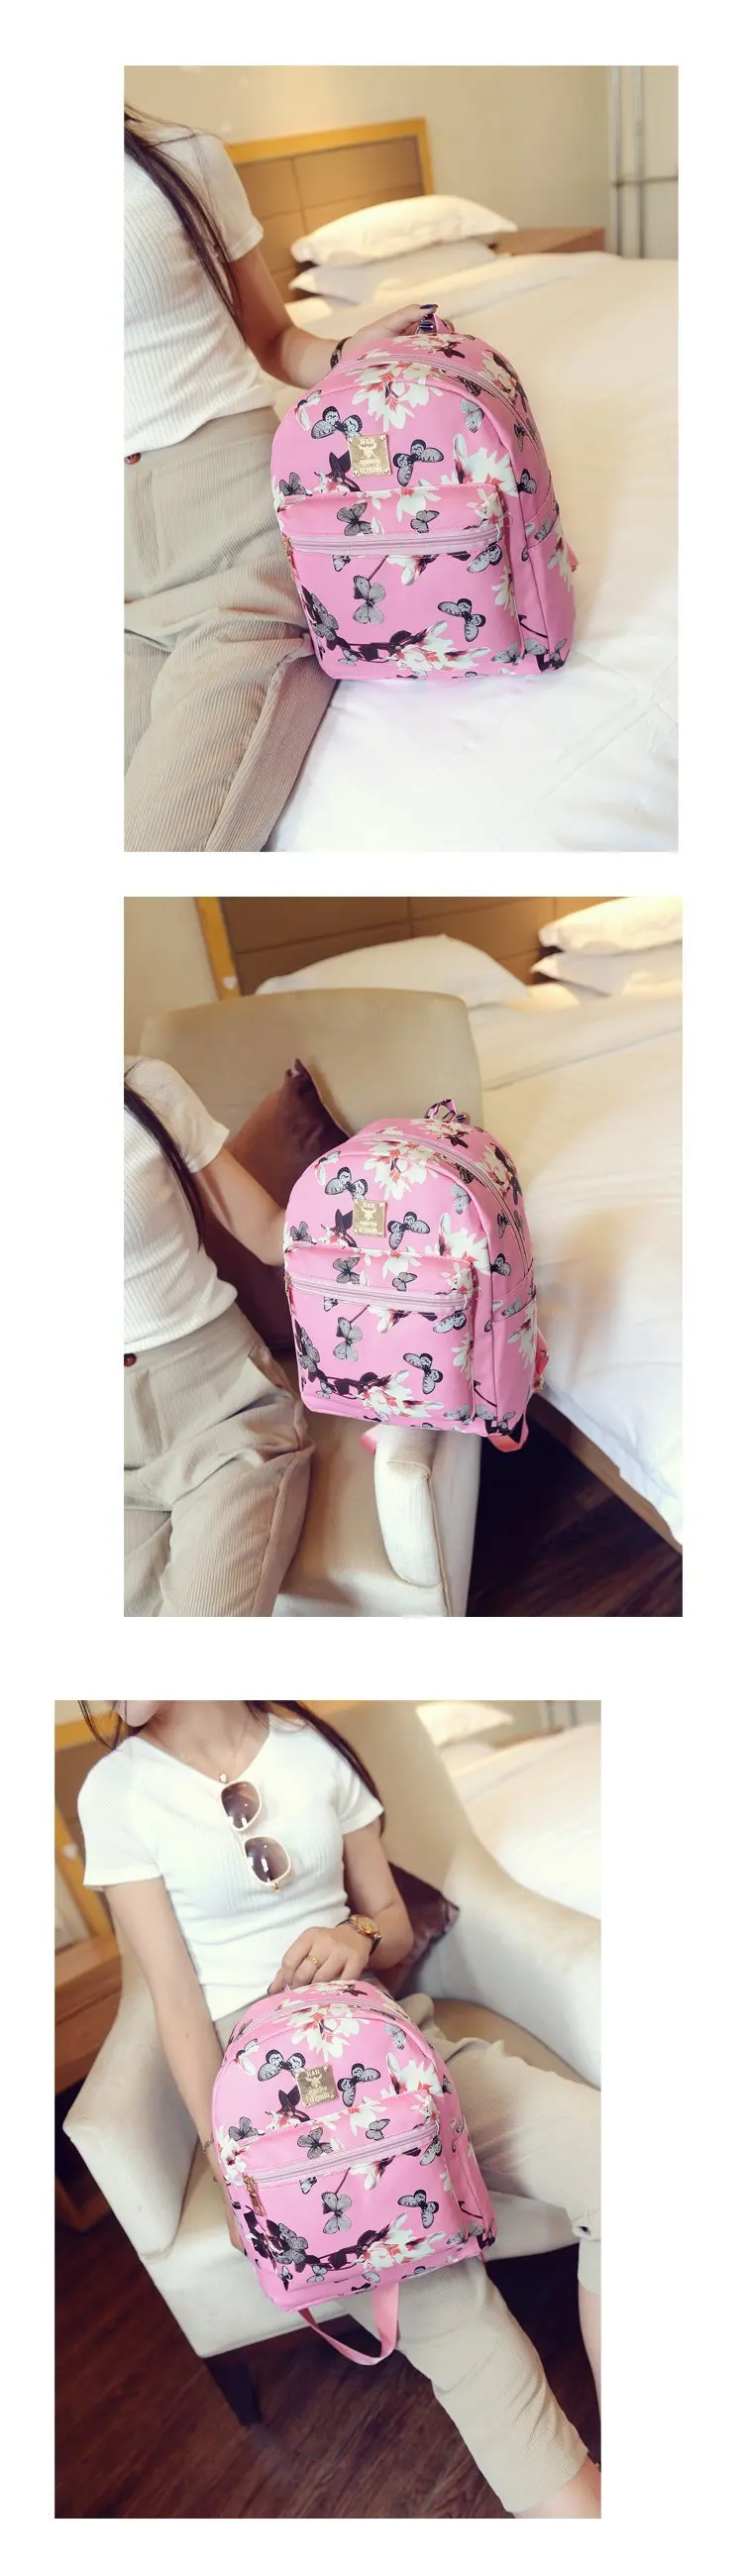 2018 Новый стиль бабочка цветок плеча школьная сумка Женская корейский стиль цветочный принт Pu студенческий рюкзак даффодилы Повседневный Bac